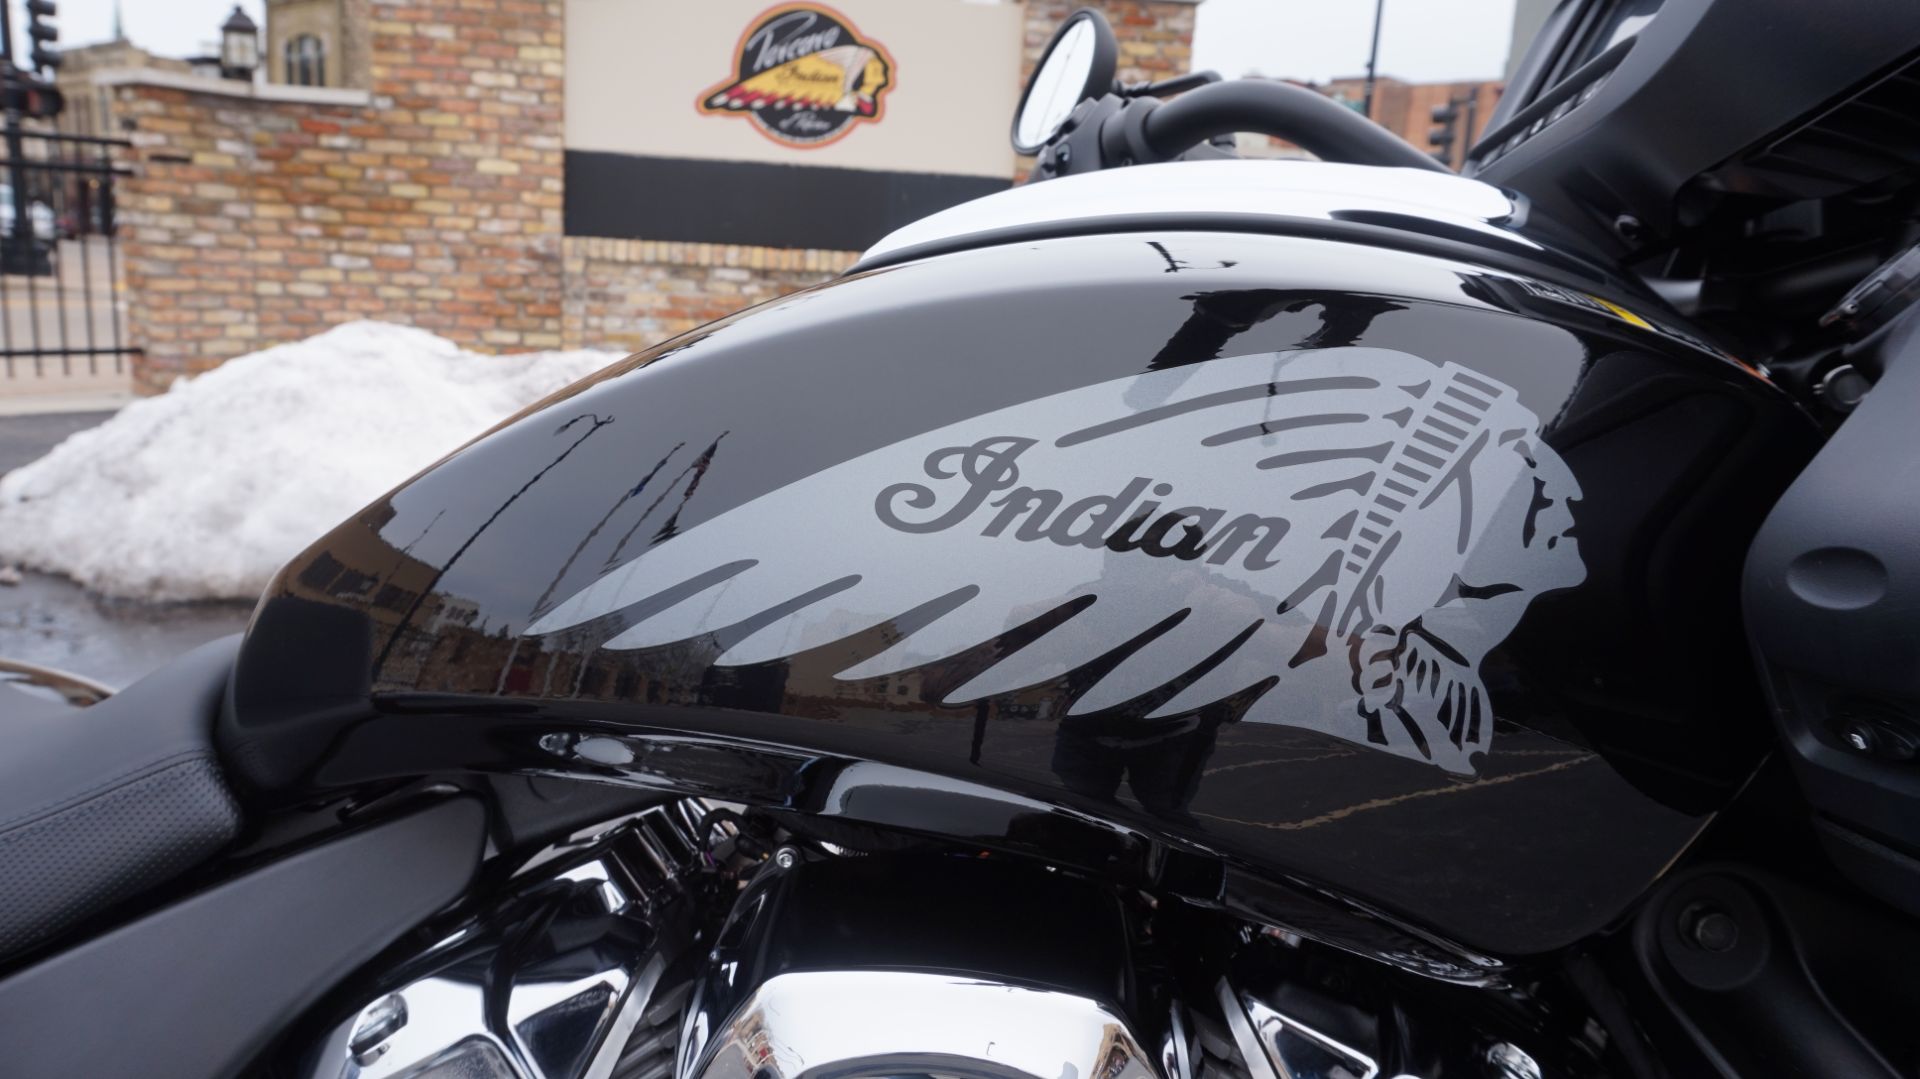 2023 Indian Motorcycle Challenger® in Racine, Wisconsin - Photo 23